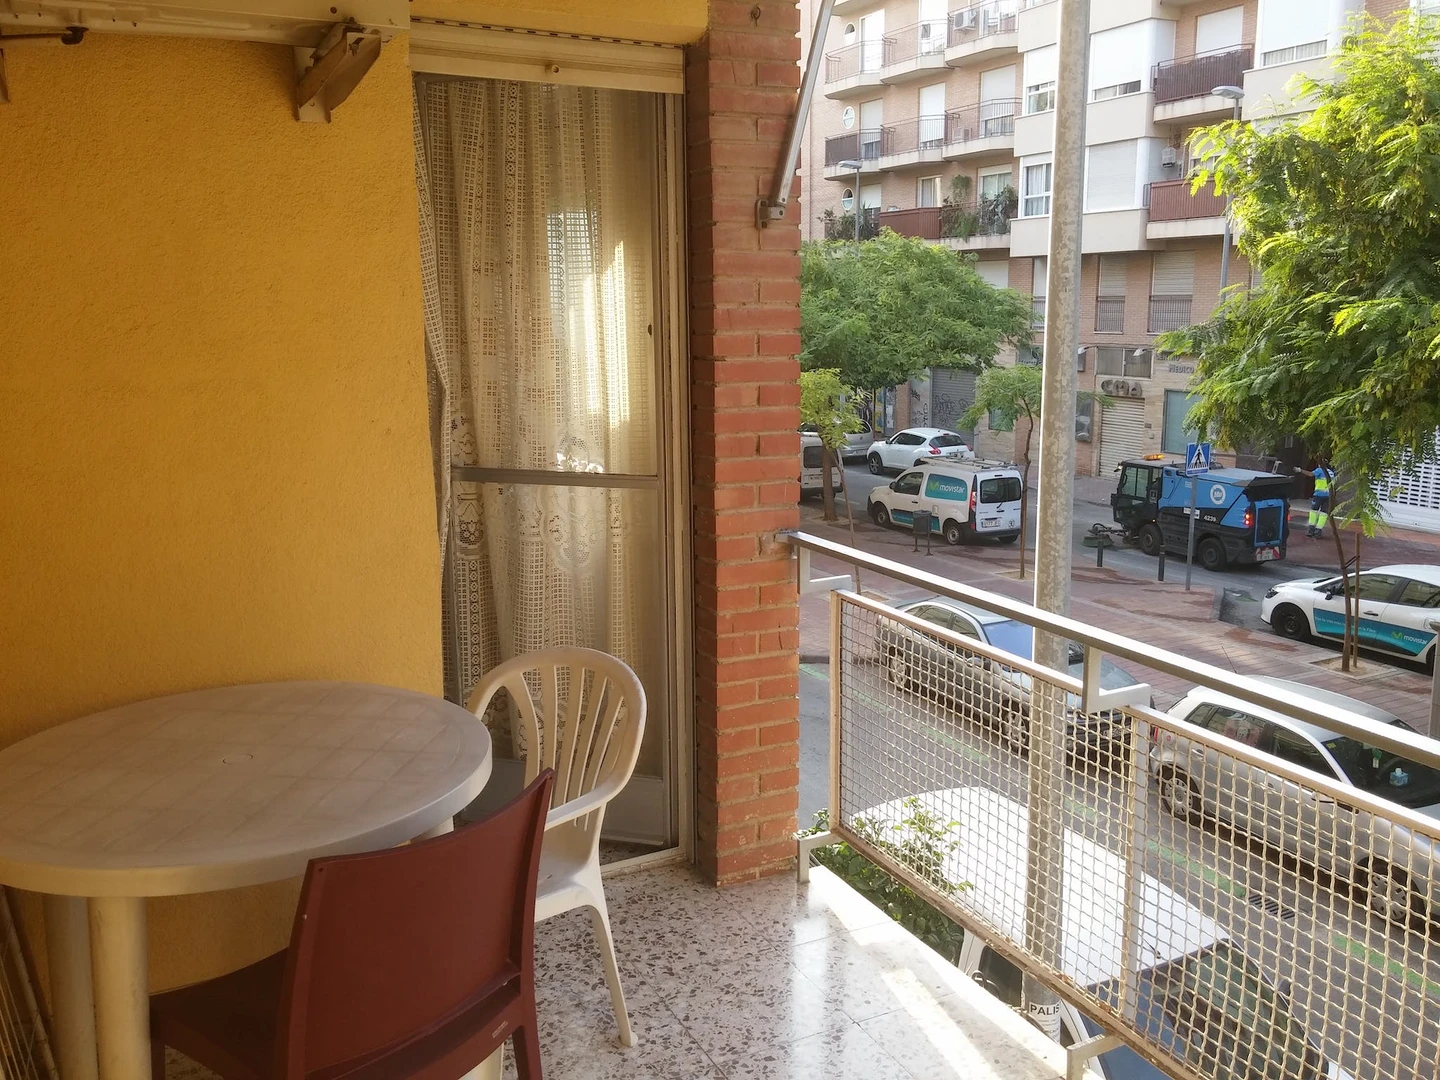 Alquiler de habitaciones por meses en Murcia